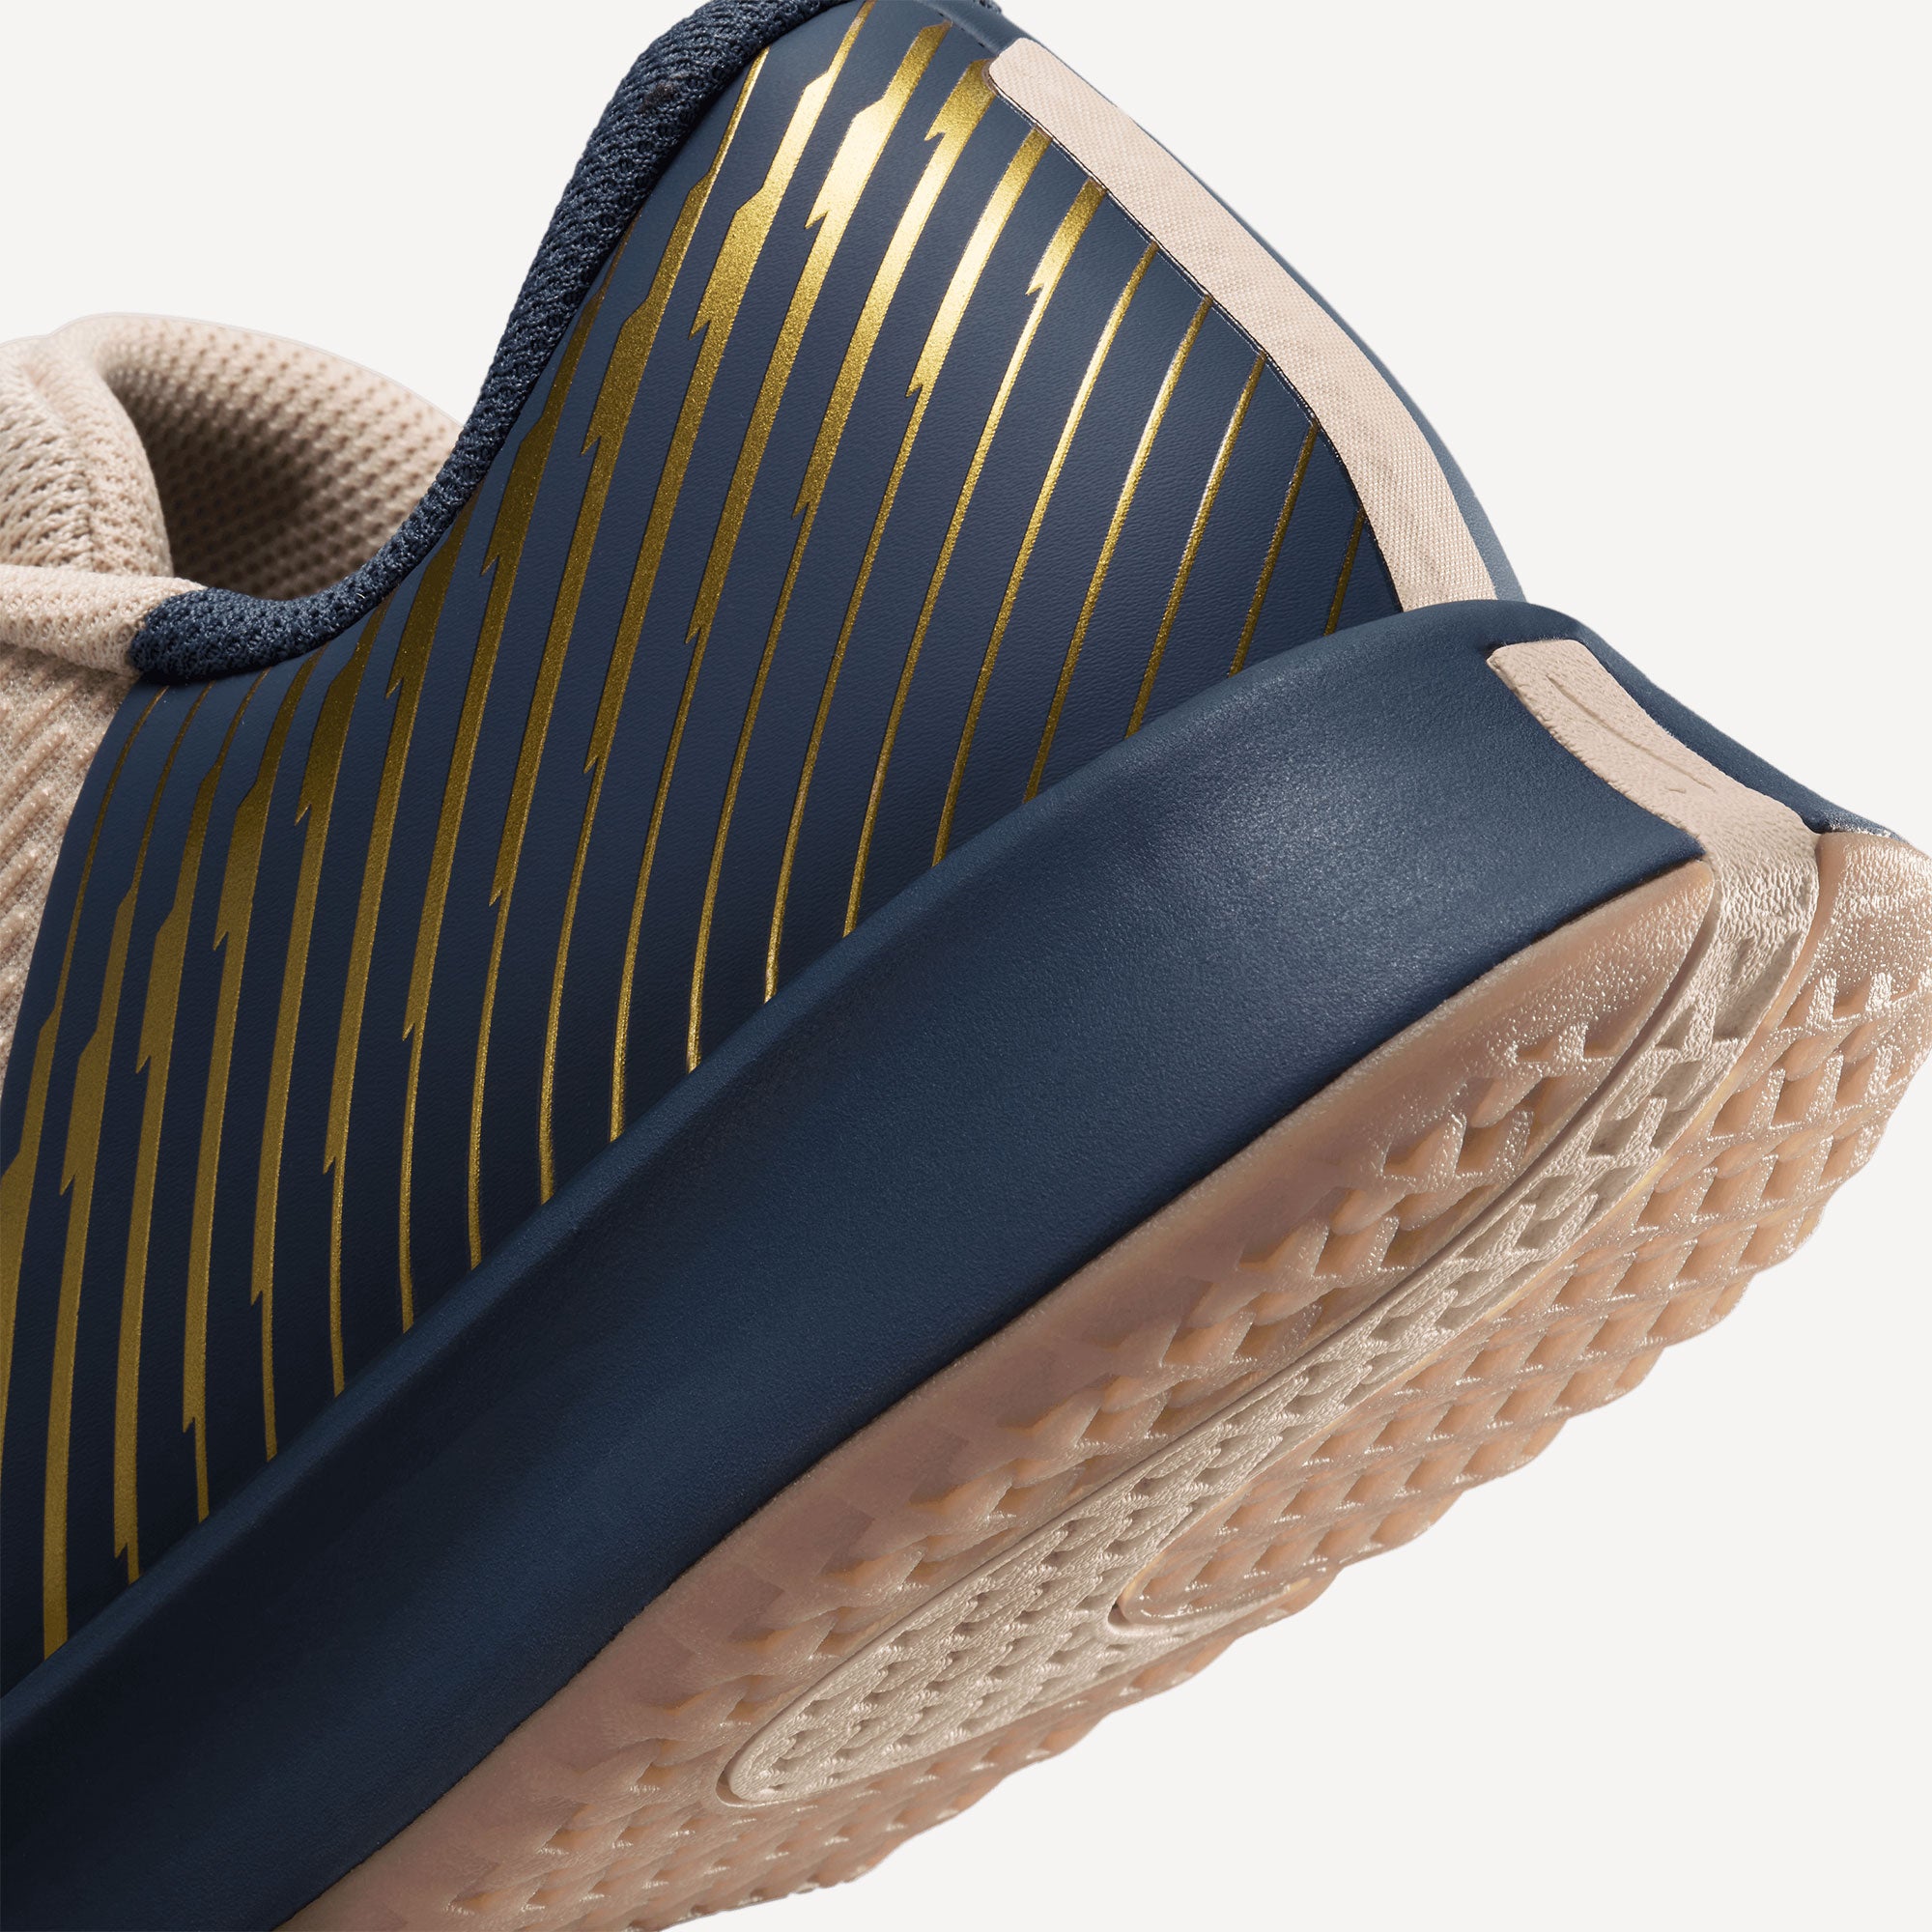 NikeCourt Air Zoom Vapor Pro 2 Premium Men's Clay Court Tennis Shoes - Sand (8)